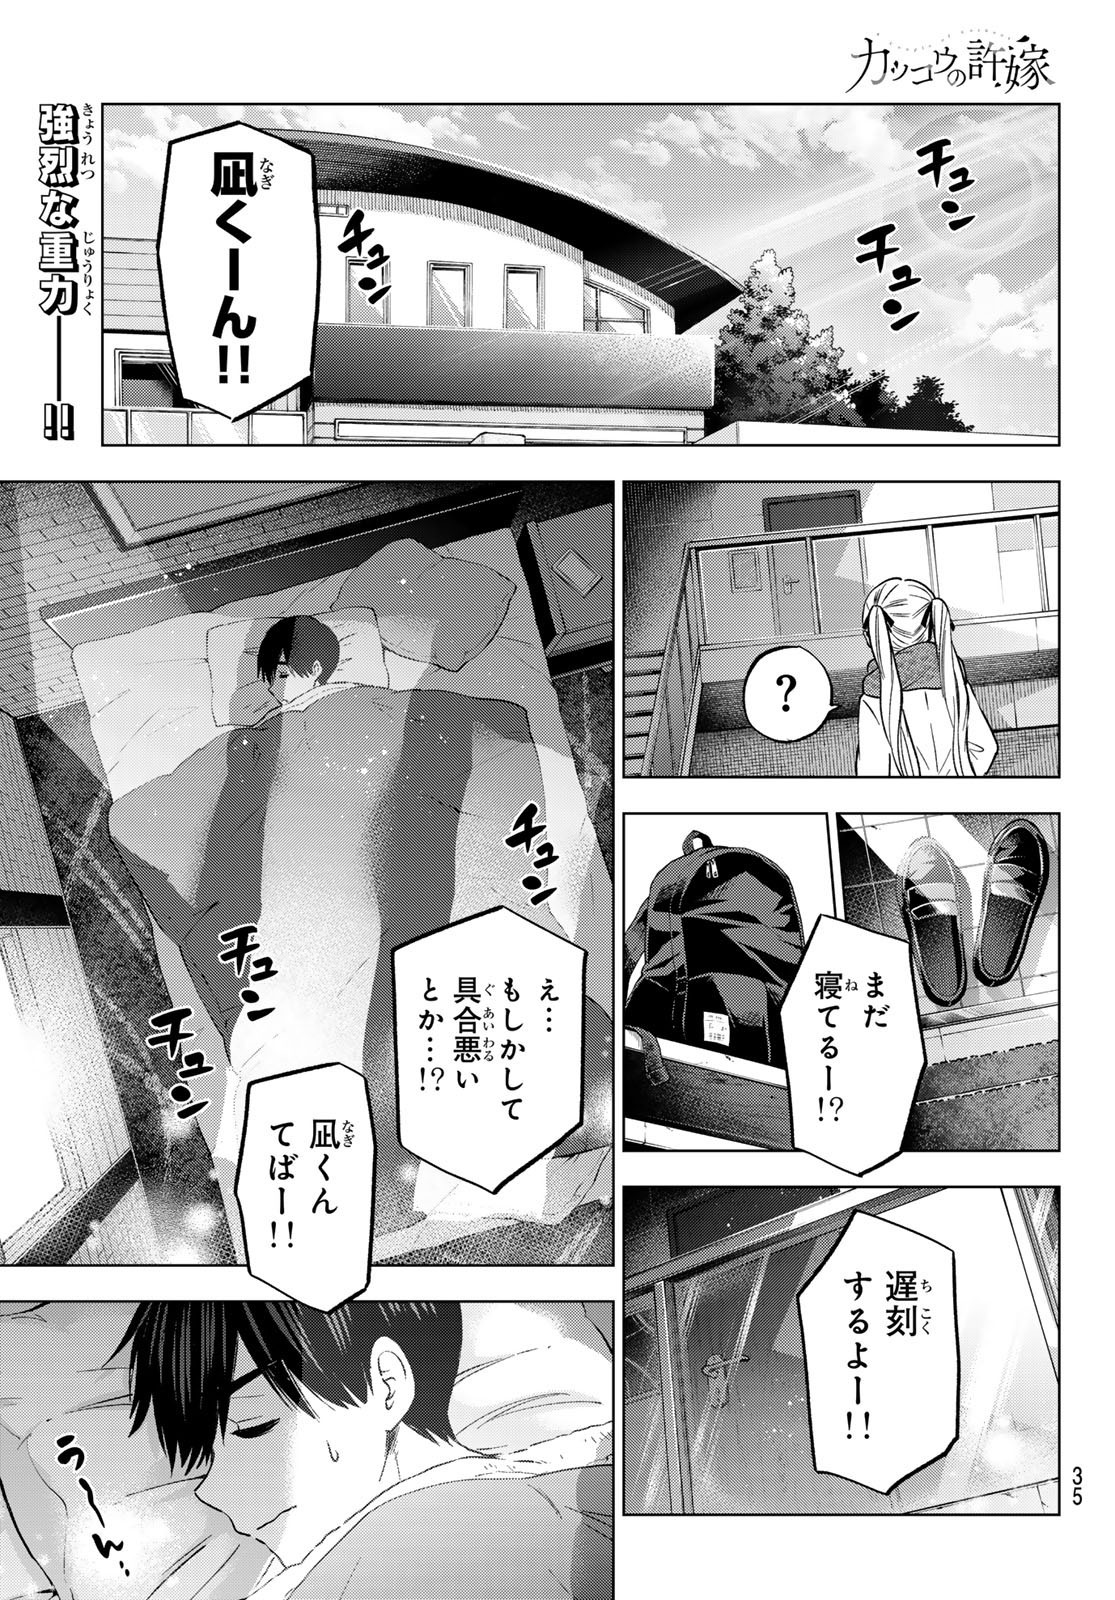 Kakkou no Iinazuke - Chapter 181 - Page 1